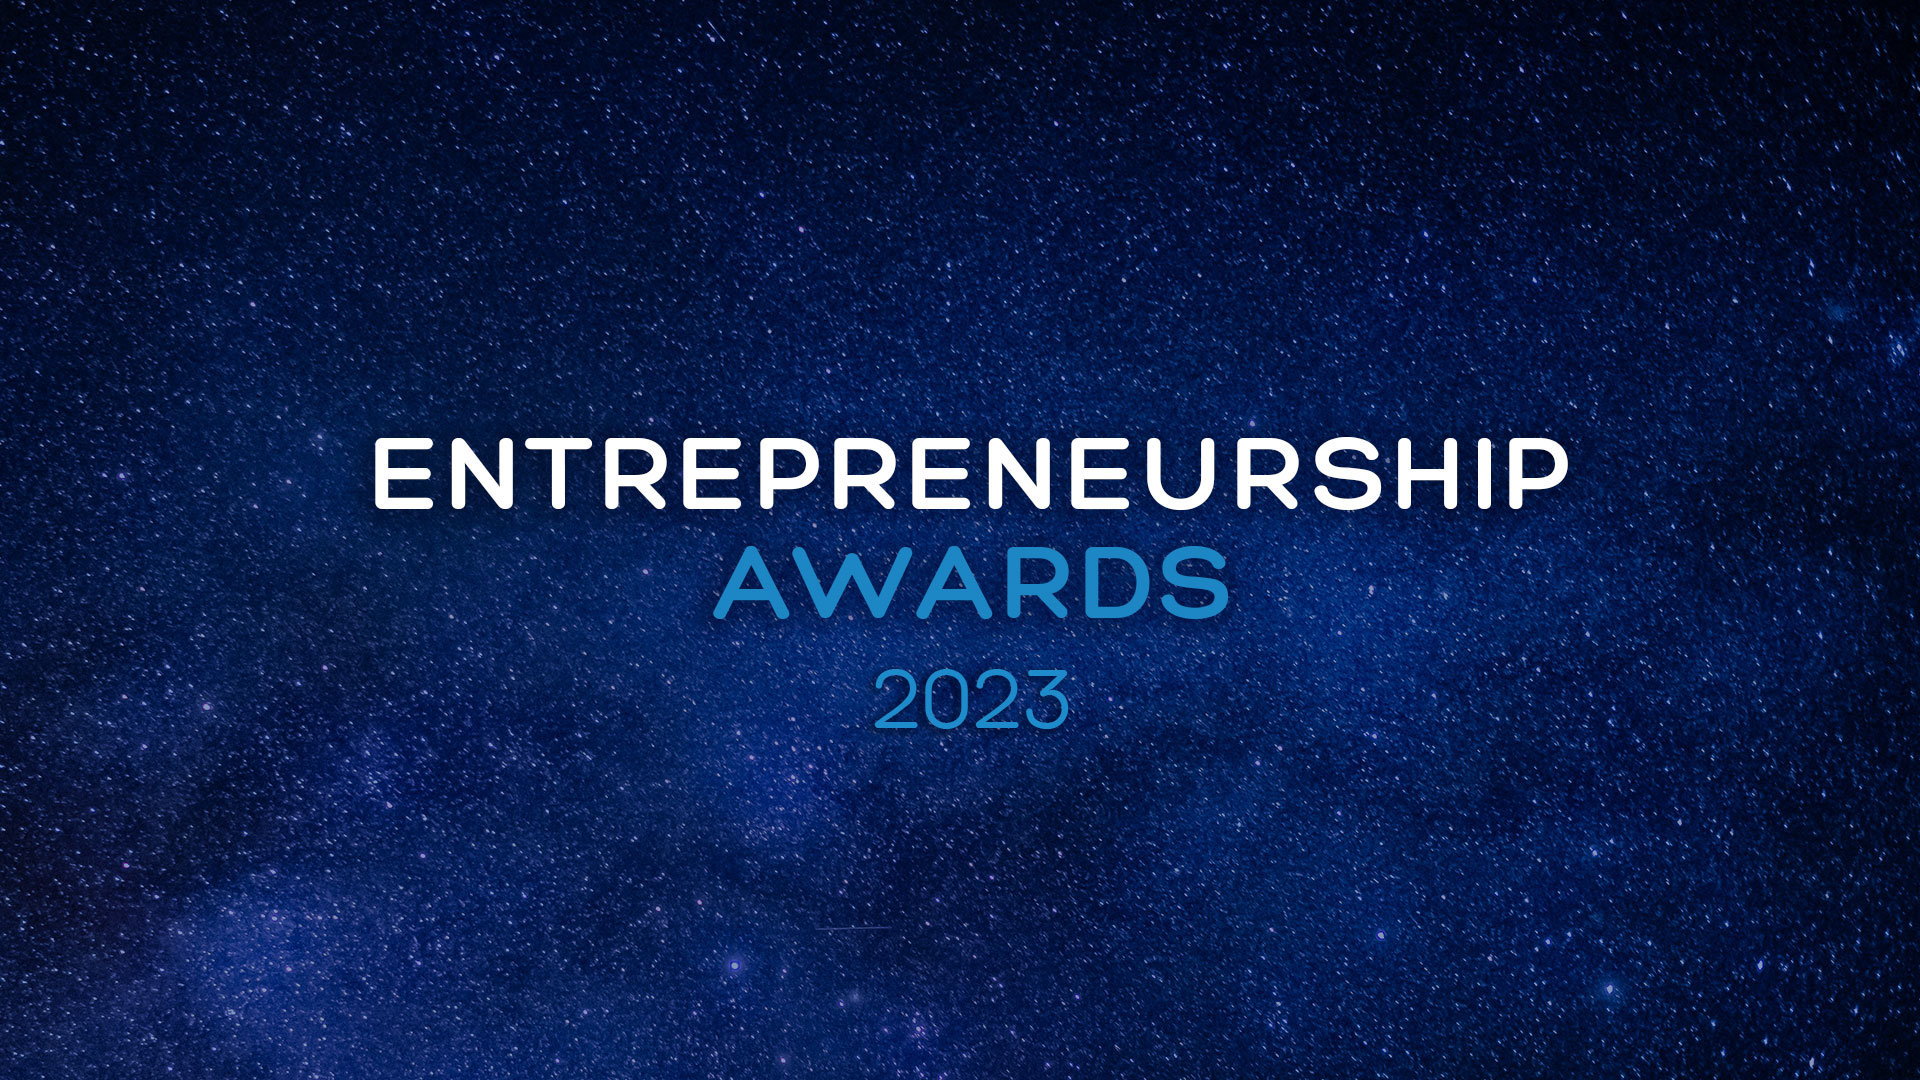 Entrepreneurship Awards 2023